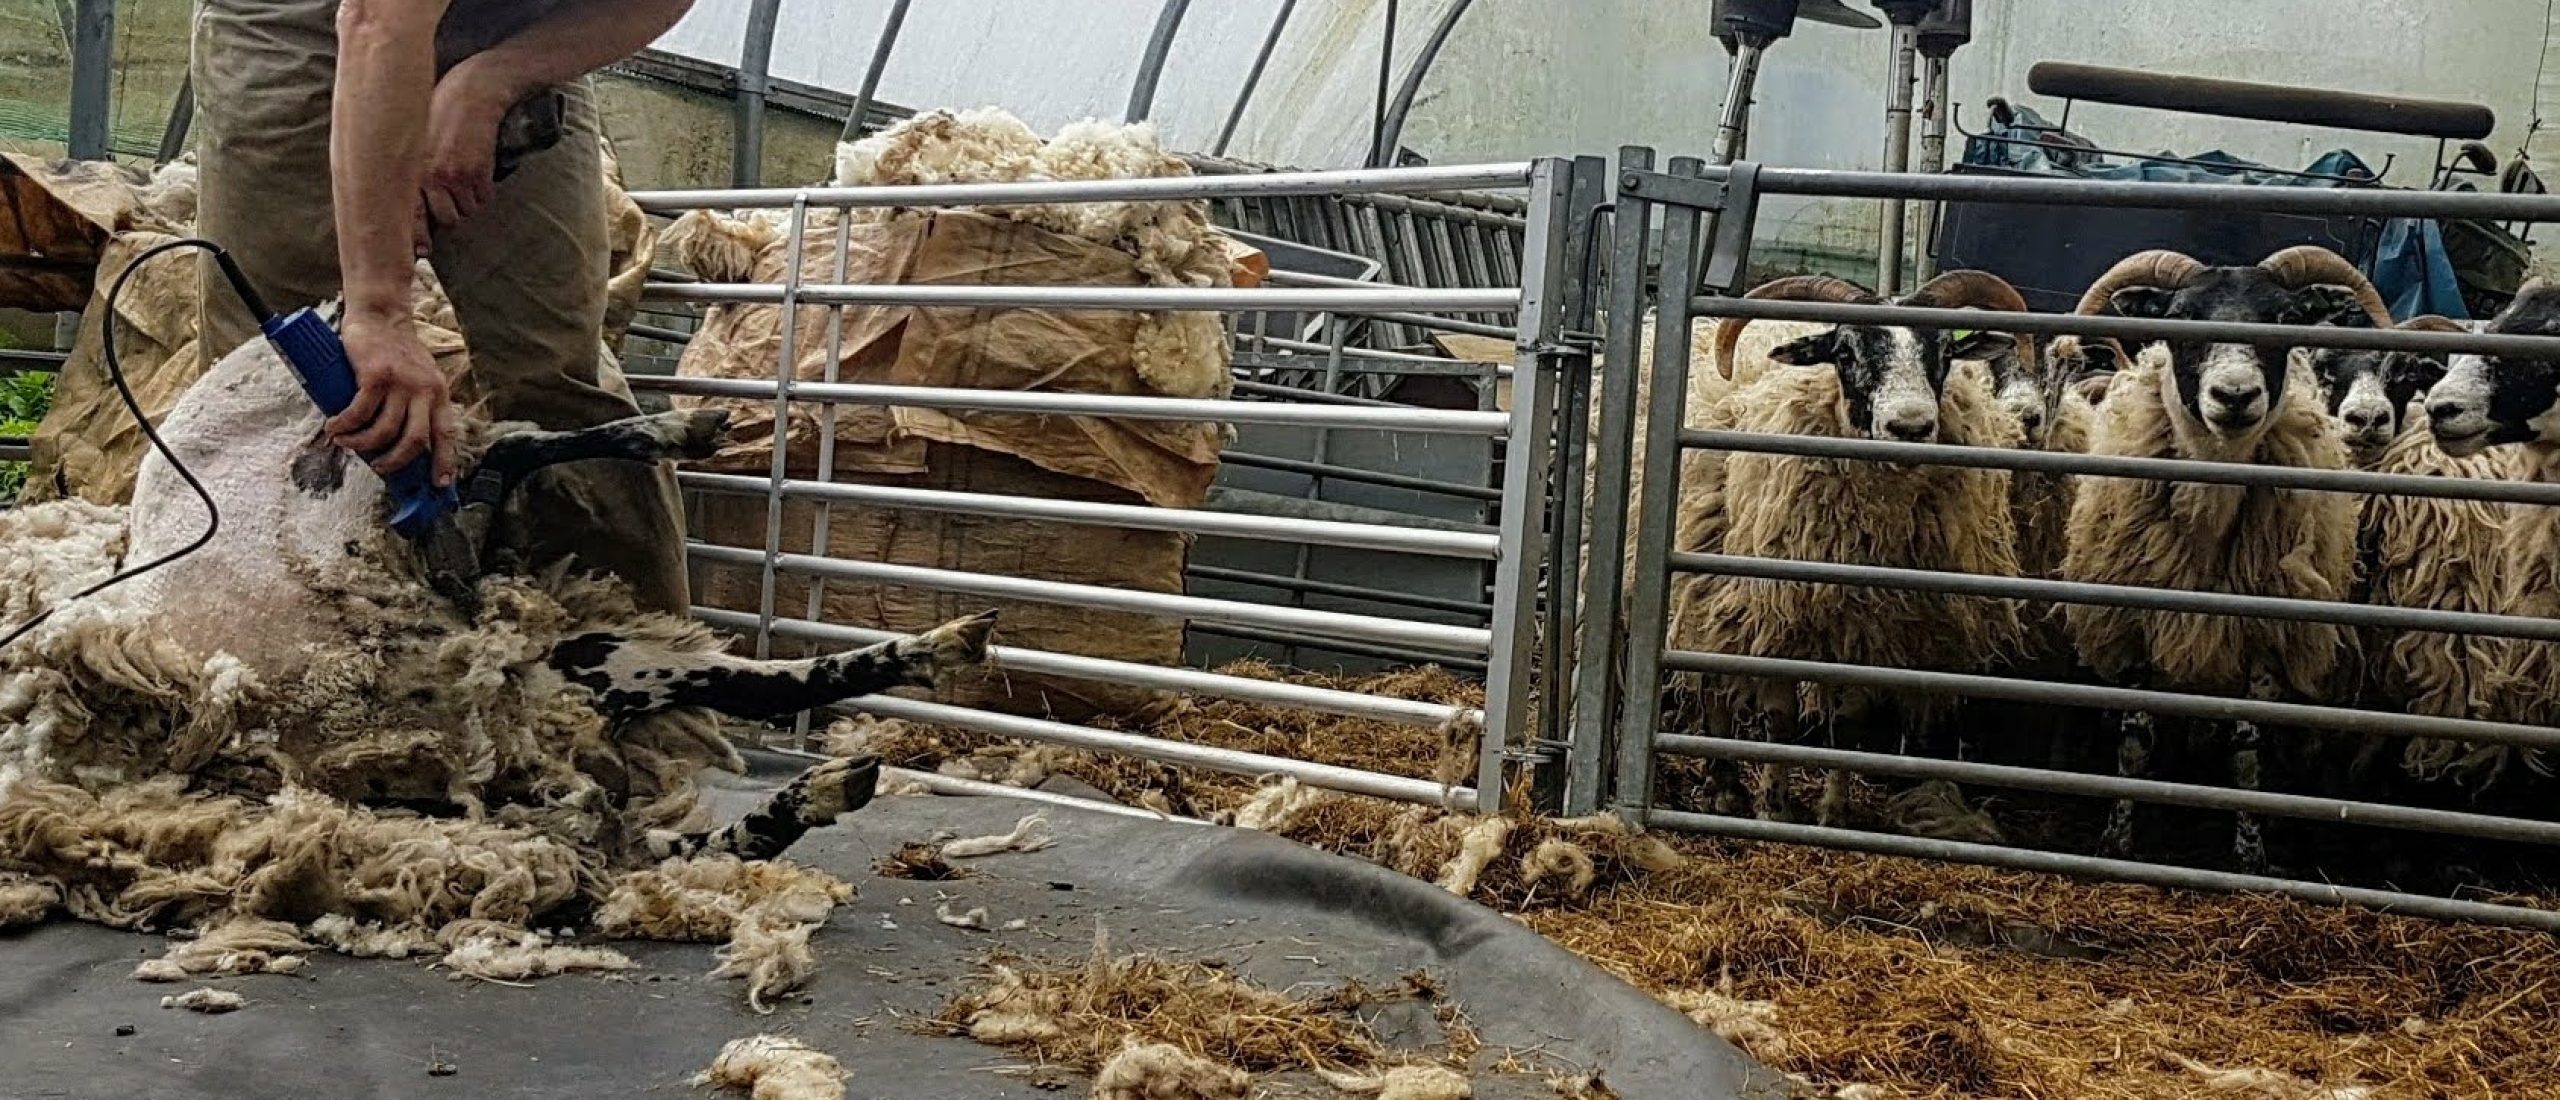 zaterdag 20 mei schapen scheren.  Leuk om te zien en de wol is gratis